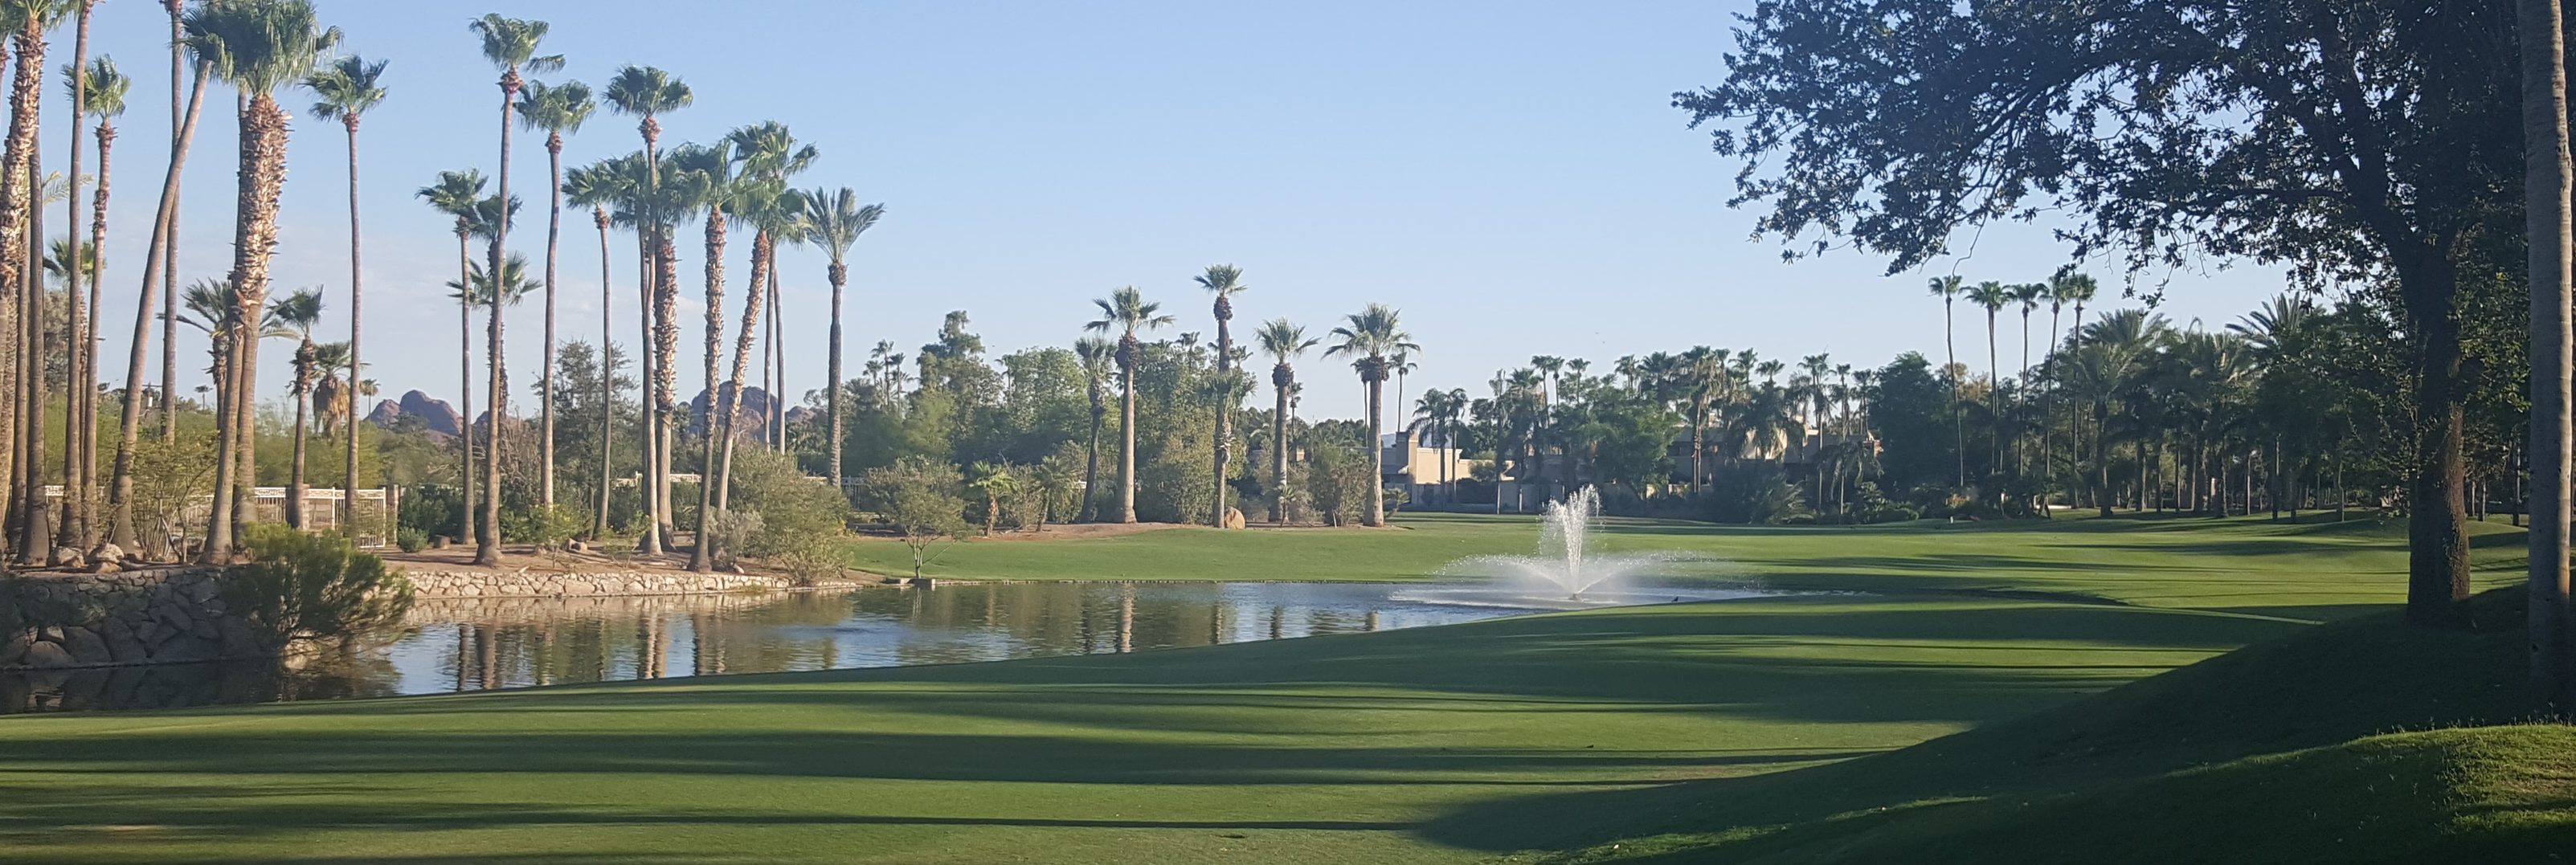 Golf resort in Scottsdale, AZ